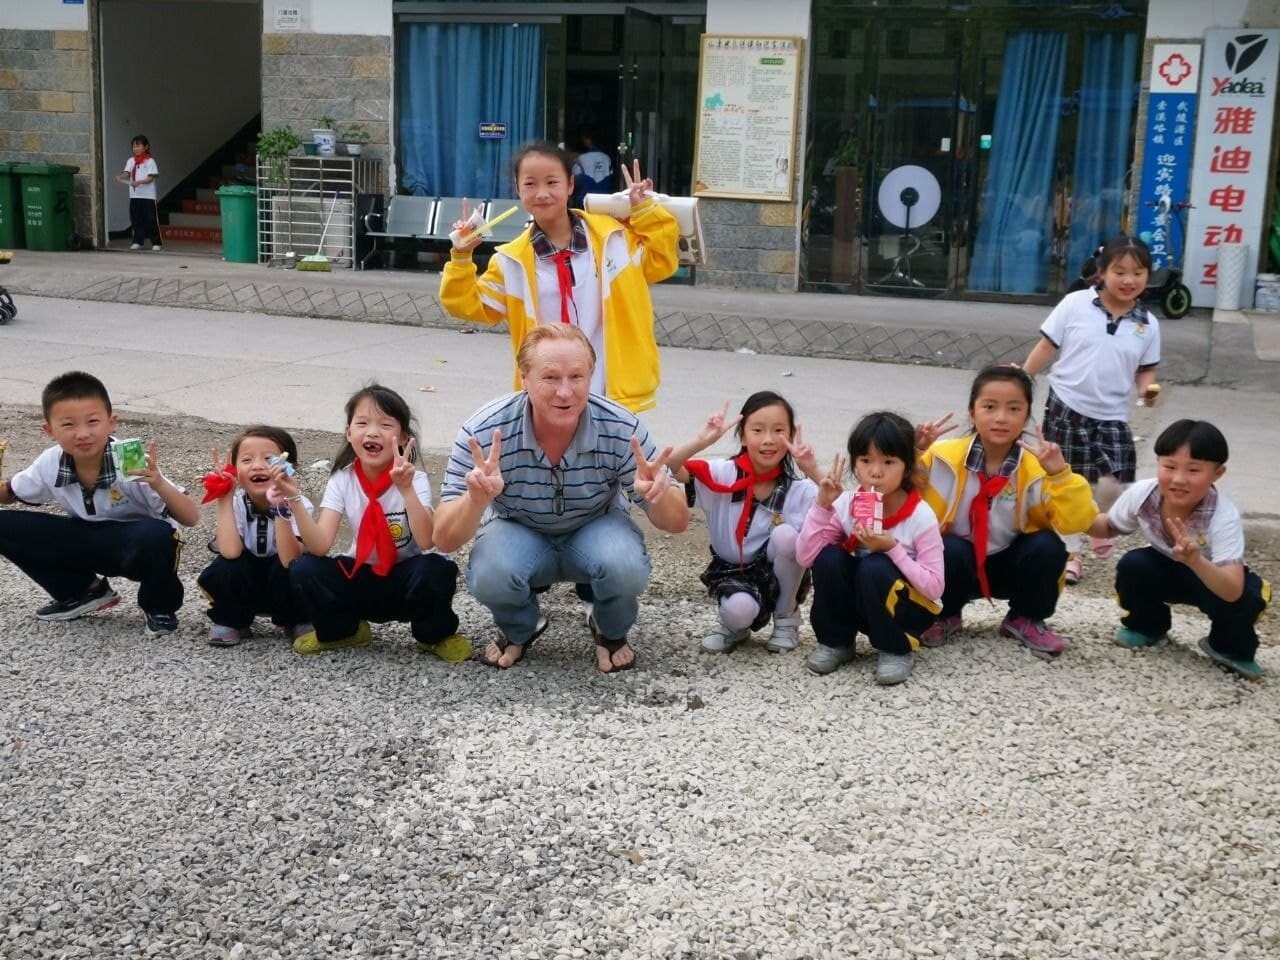 Sergio e Lieege com estudantes na China.